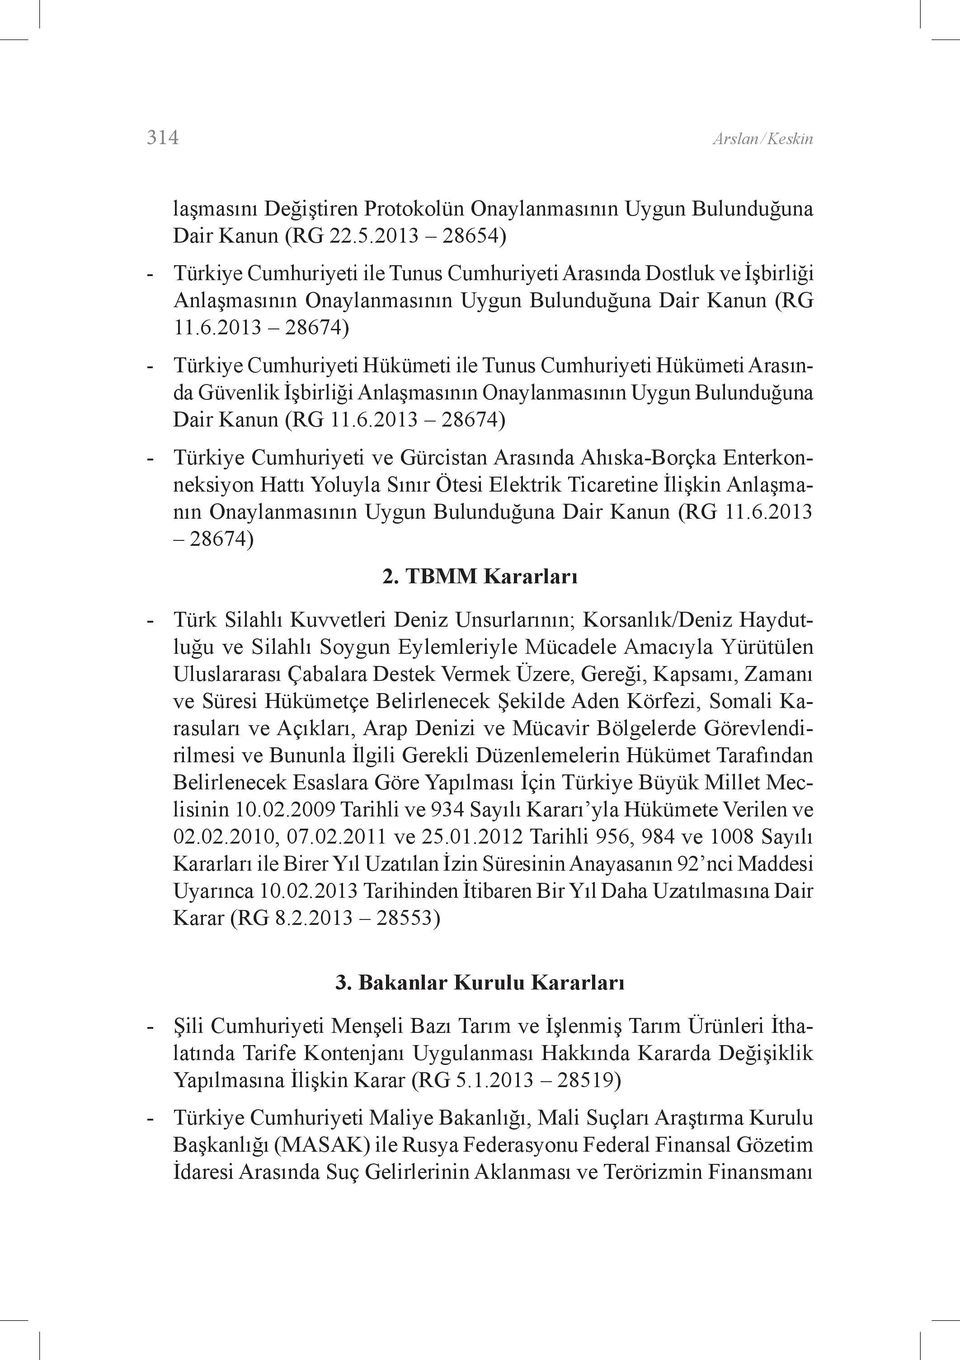 6.2013 28674) - Türkiye Cumhuriyeti ve Gürcistan Arasında Ahıska-Borçka Enterkonneksiyon Hattı Yoluyla Sınır Ötesi Elektrik Ticaretine İlişkin Anlaşmanın Onaylanmasının Uygun Bulunduğuna Dair Kanun